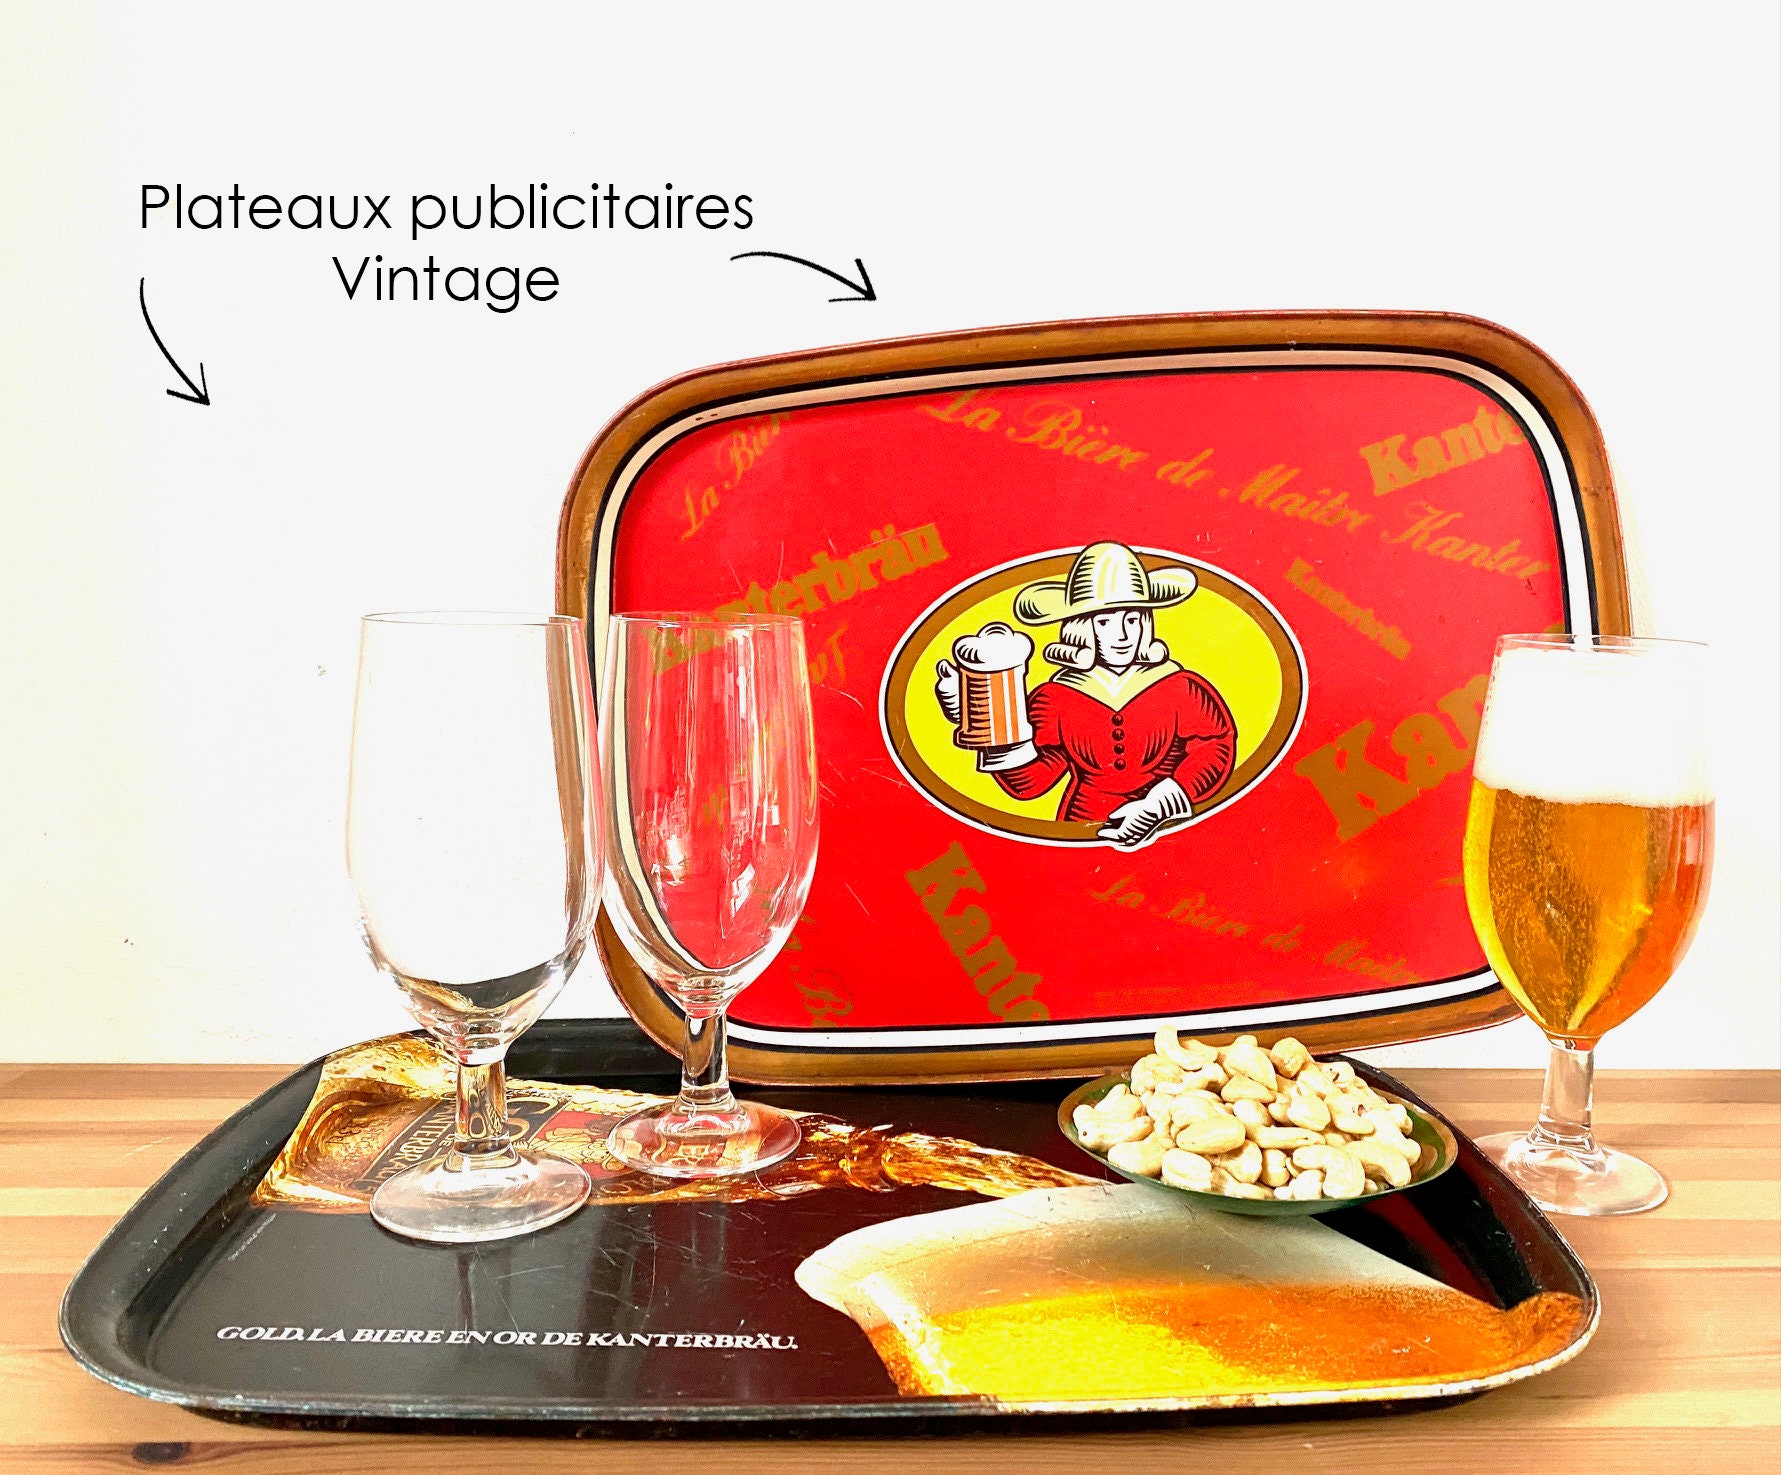 Plateaux Publicitaires - Kanterbrau Gold Bière Vintage